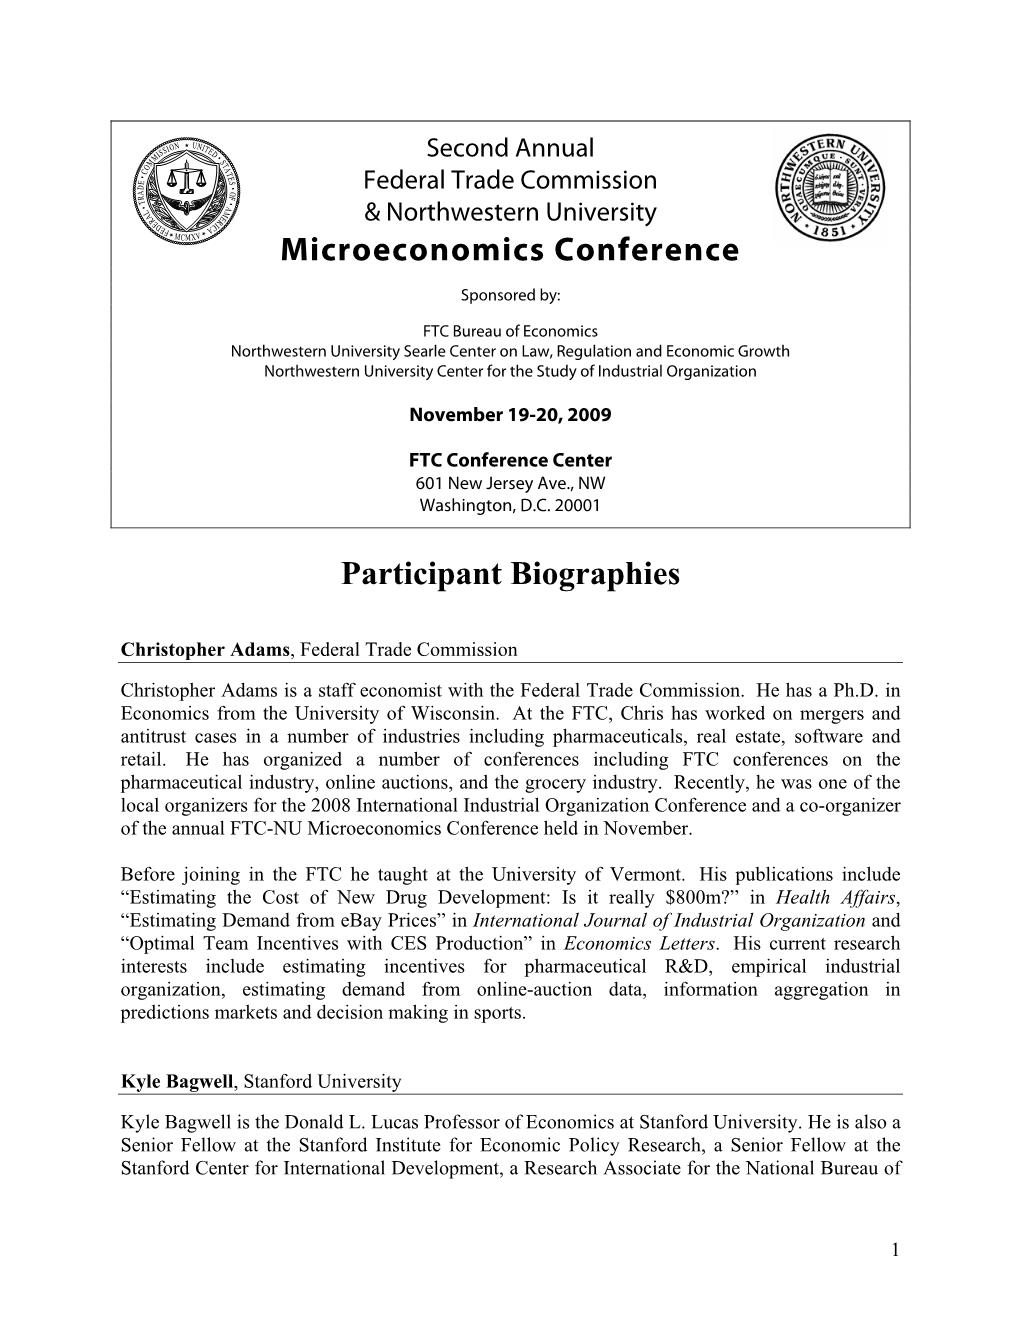 Microeconomics Conference Participant Biographies